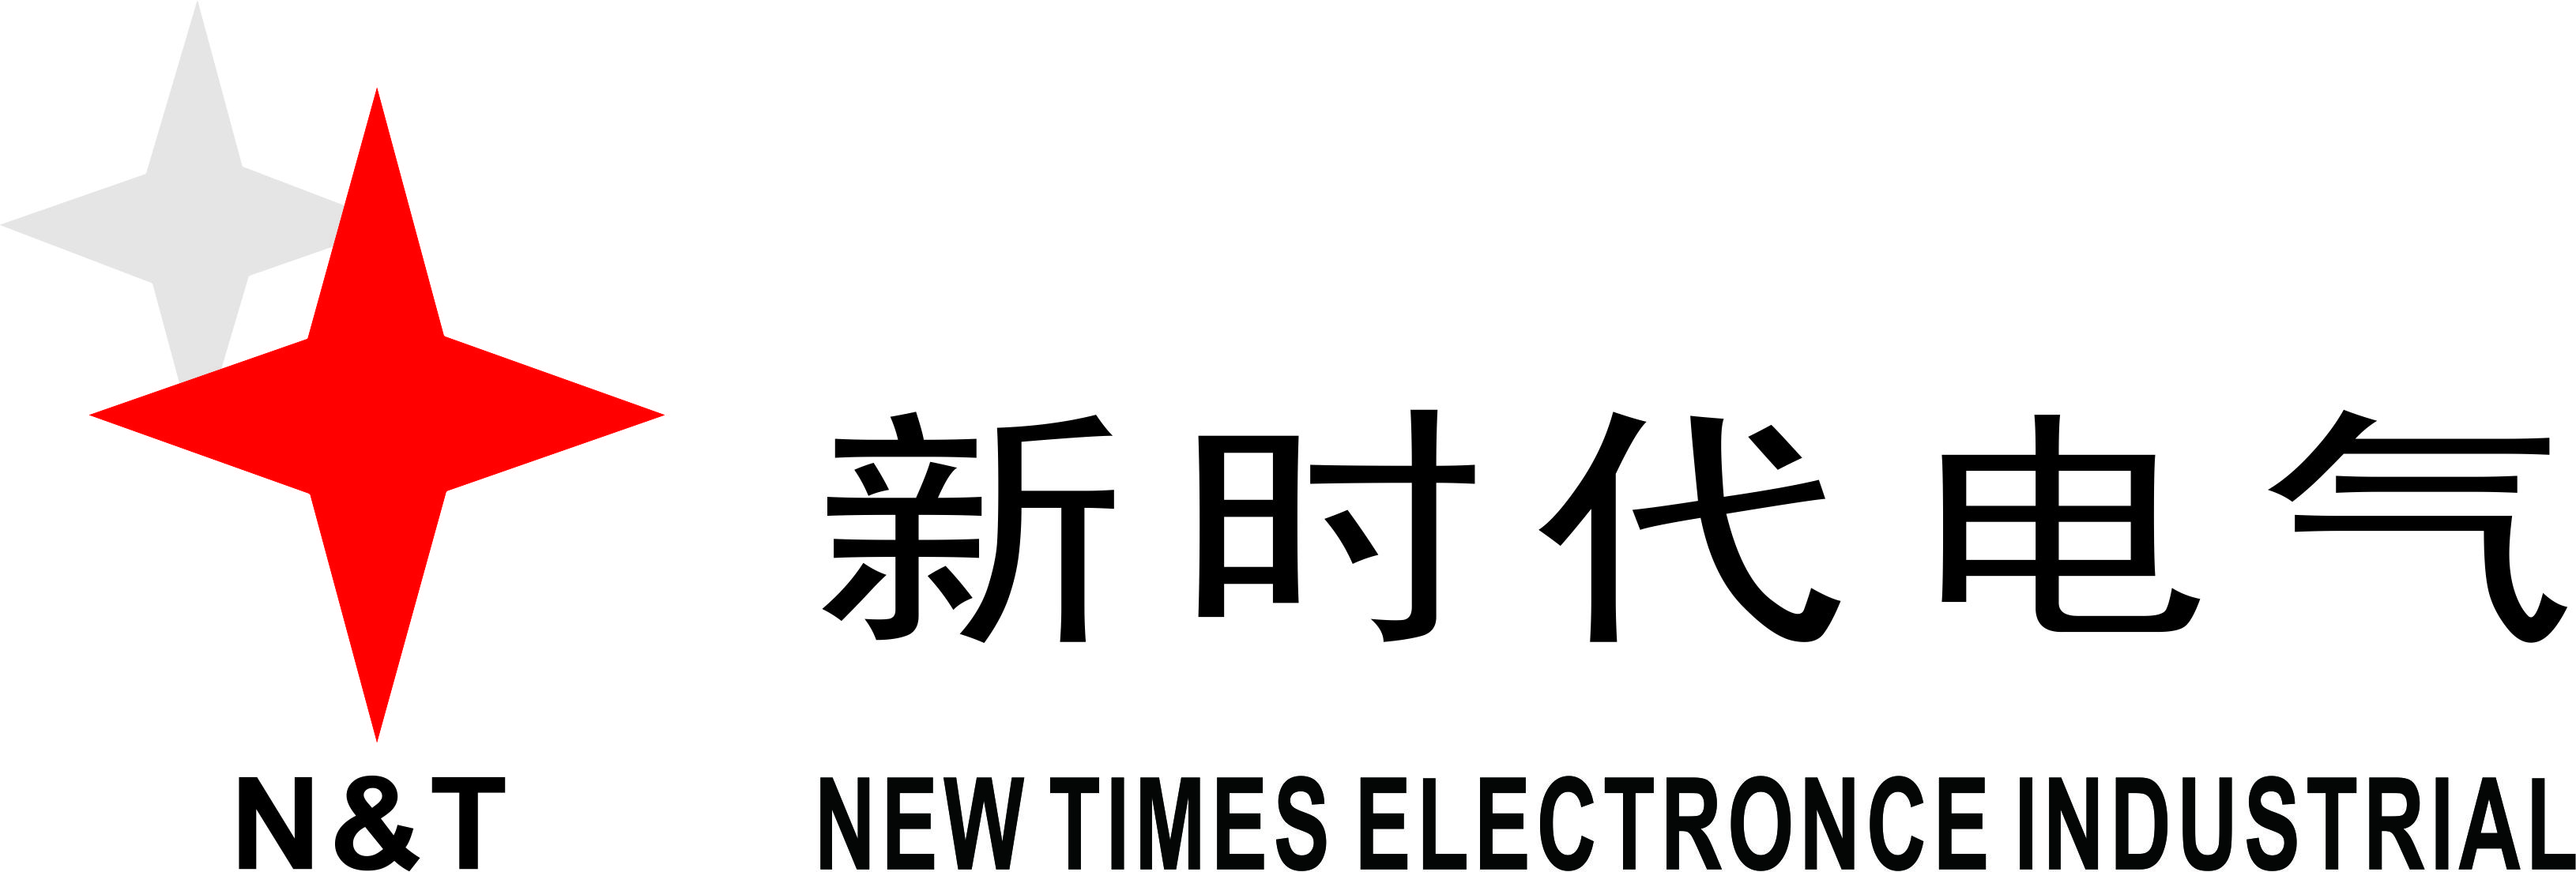 武汉新时代铁路电气有限责任公司最新招聘信息